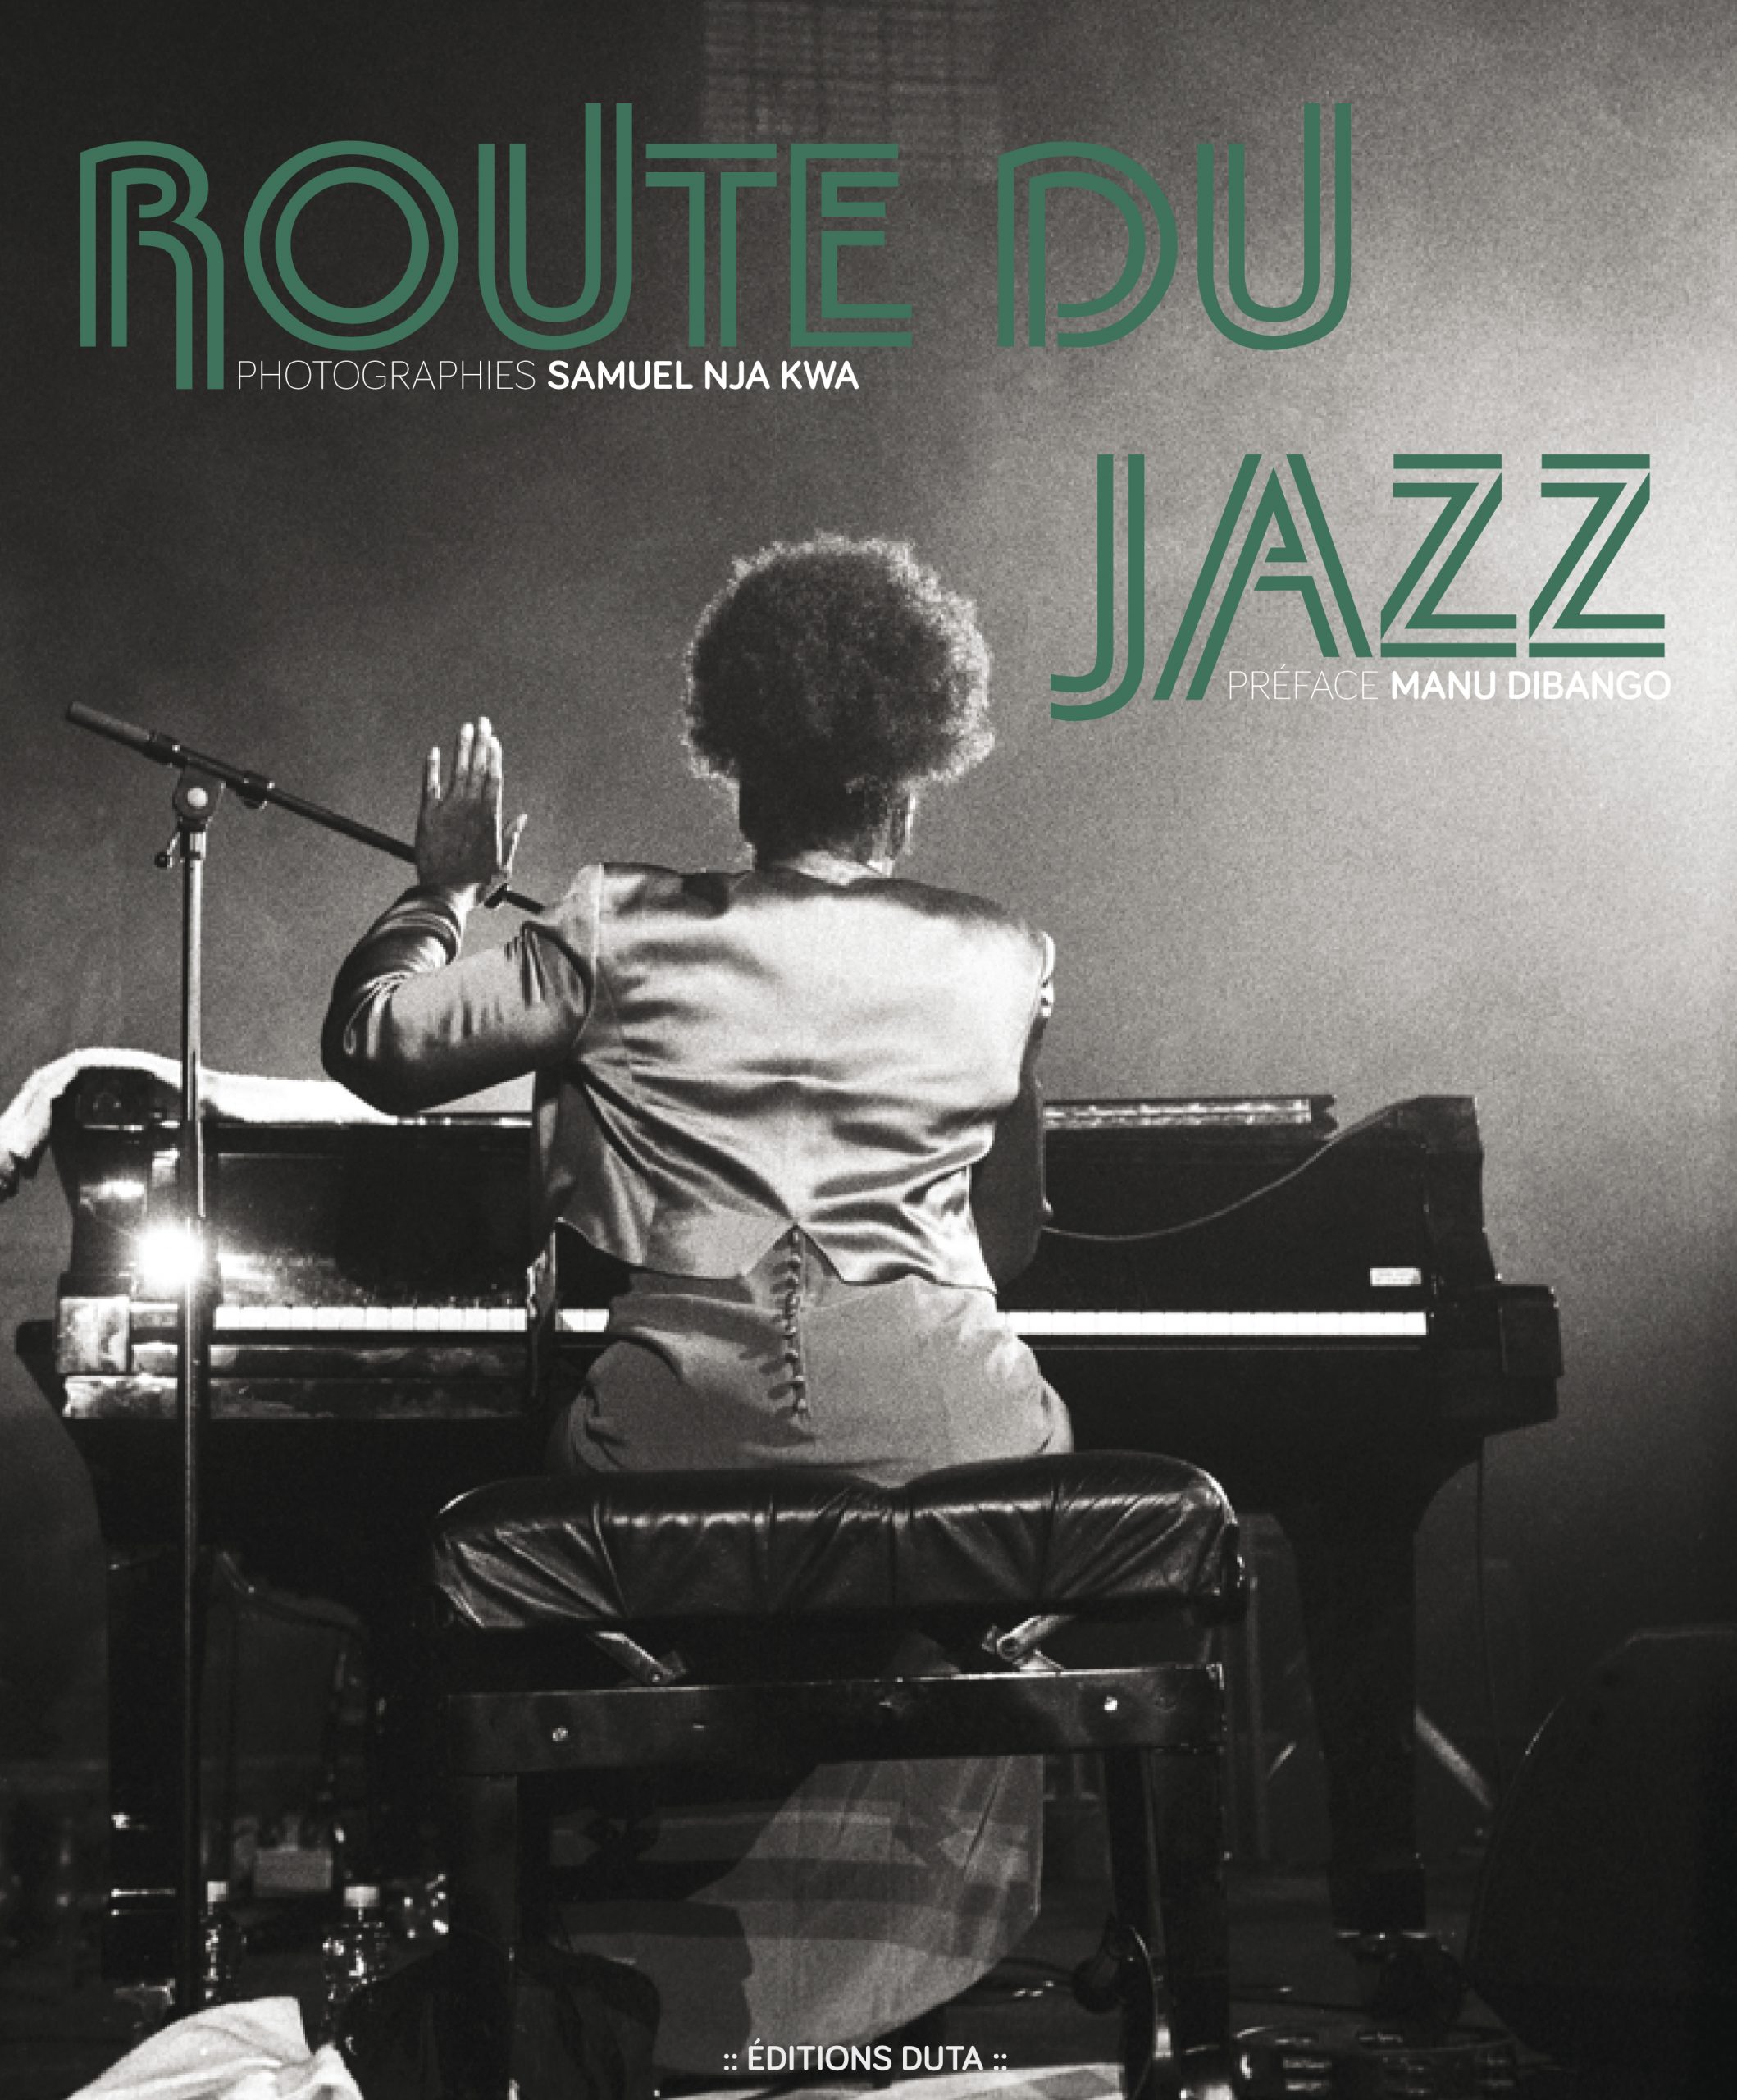 Samuel Nja Kwa trace la route du “Jazz”